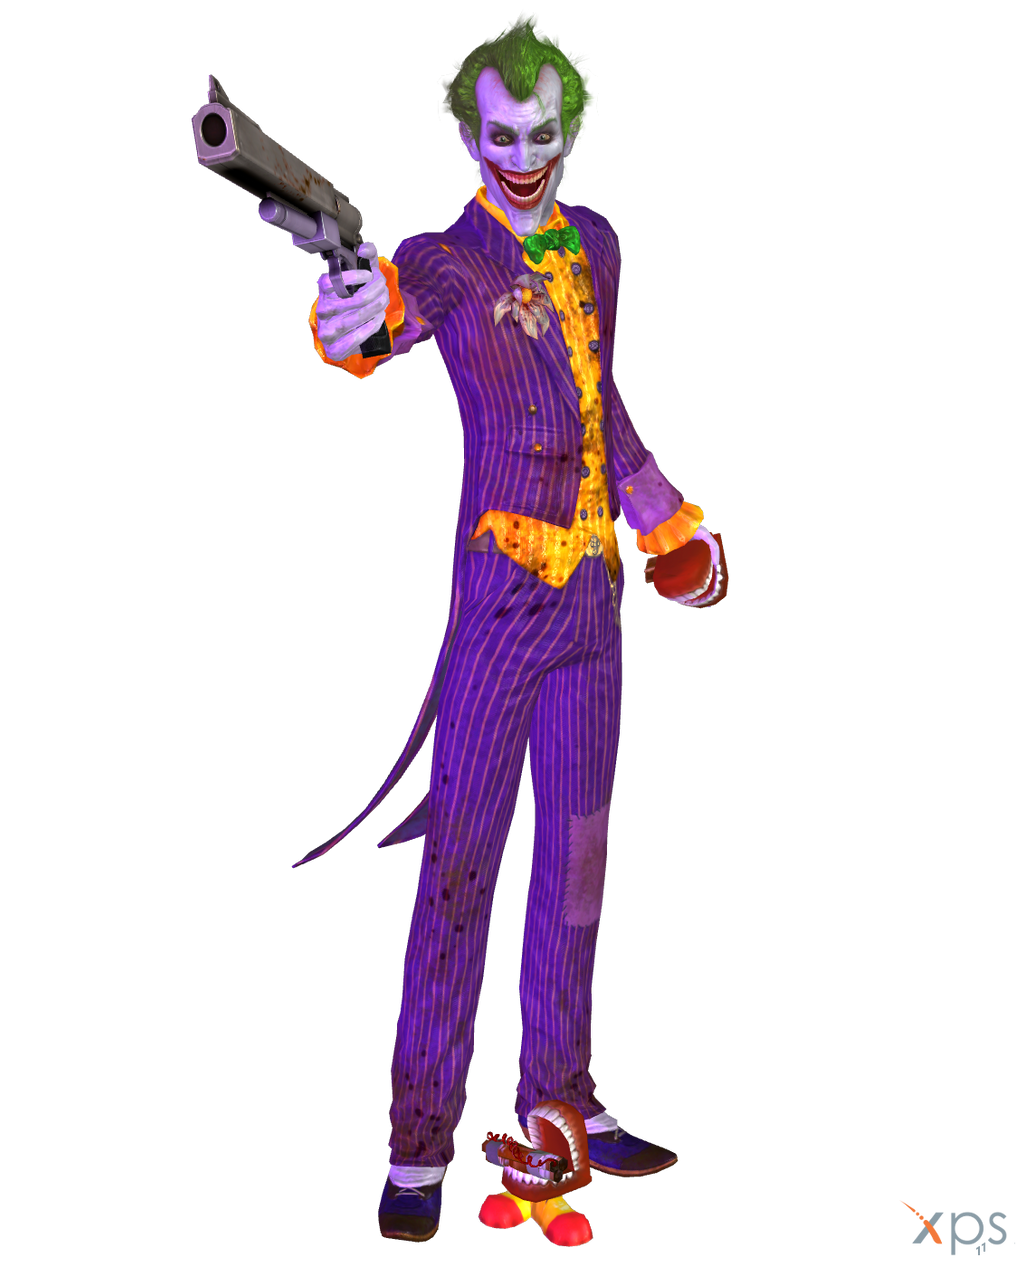 BAA - The Joker by MrUncleBingo on DeviantArt